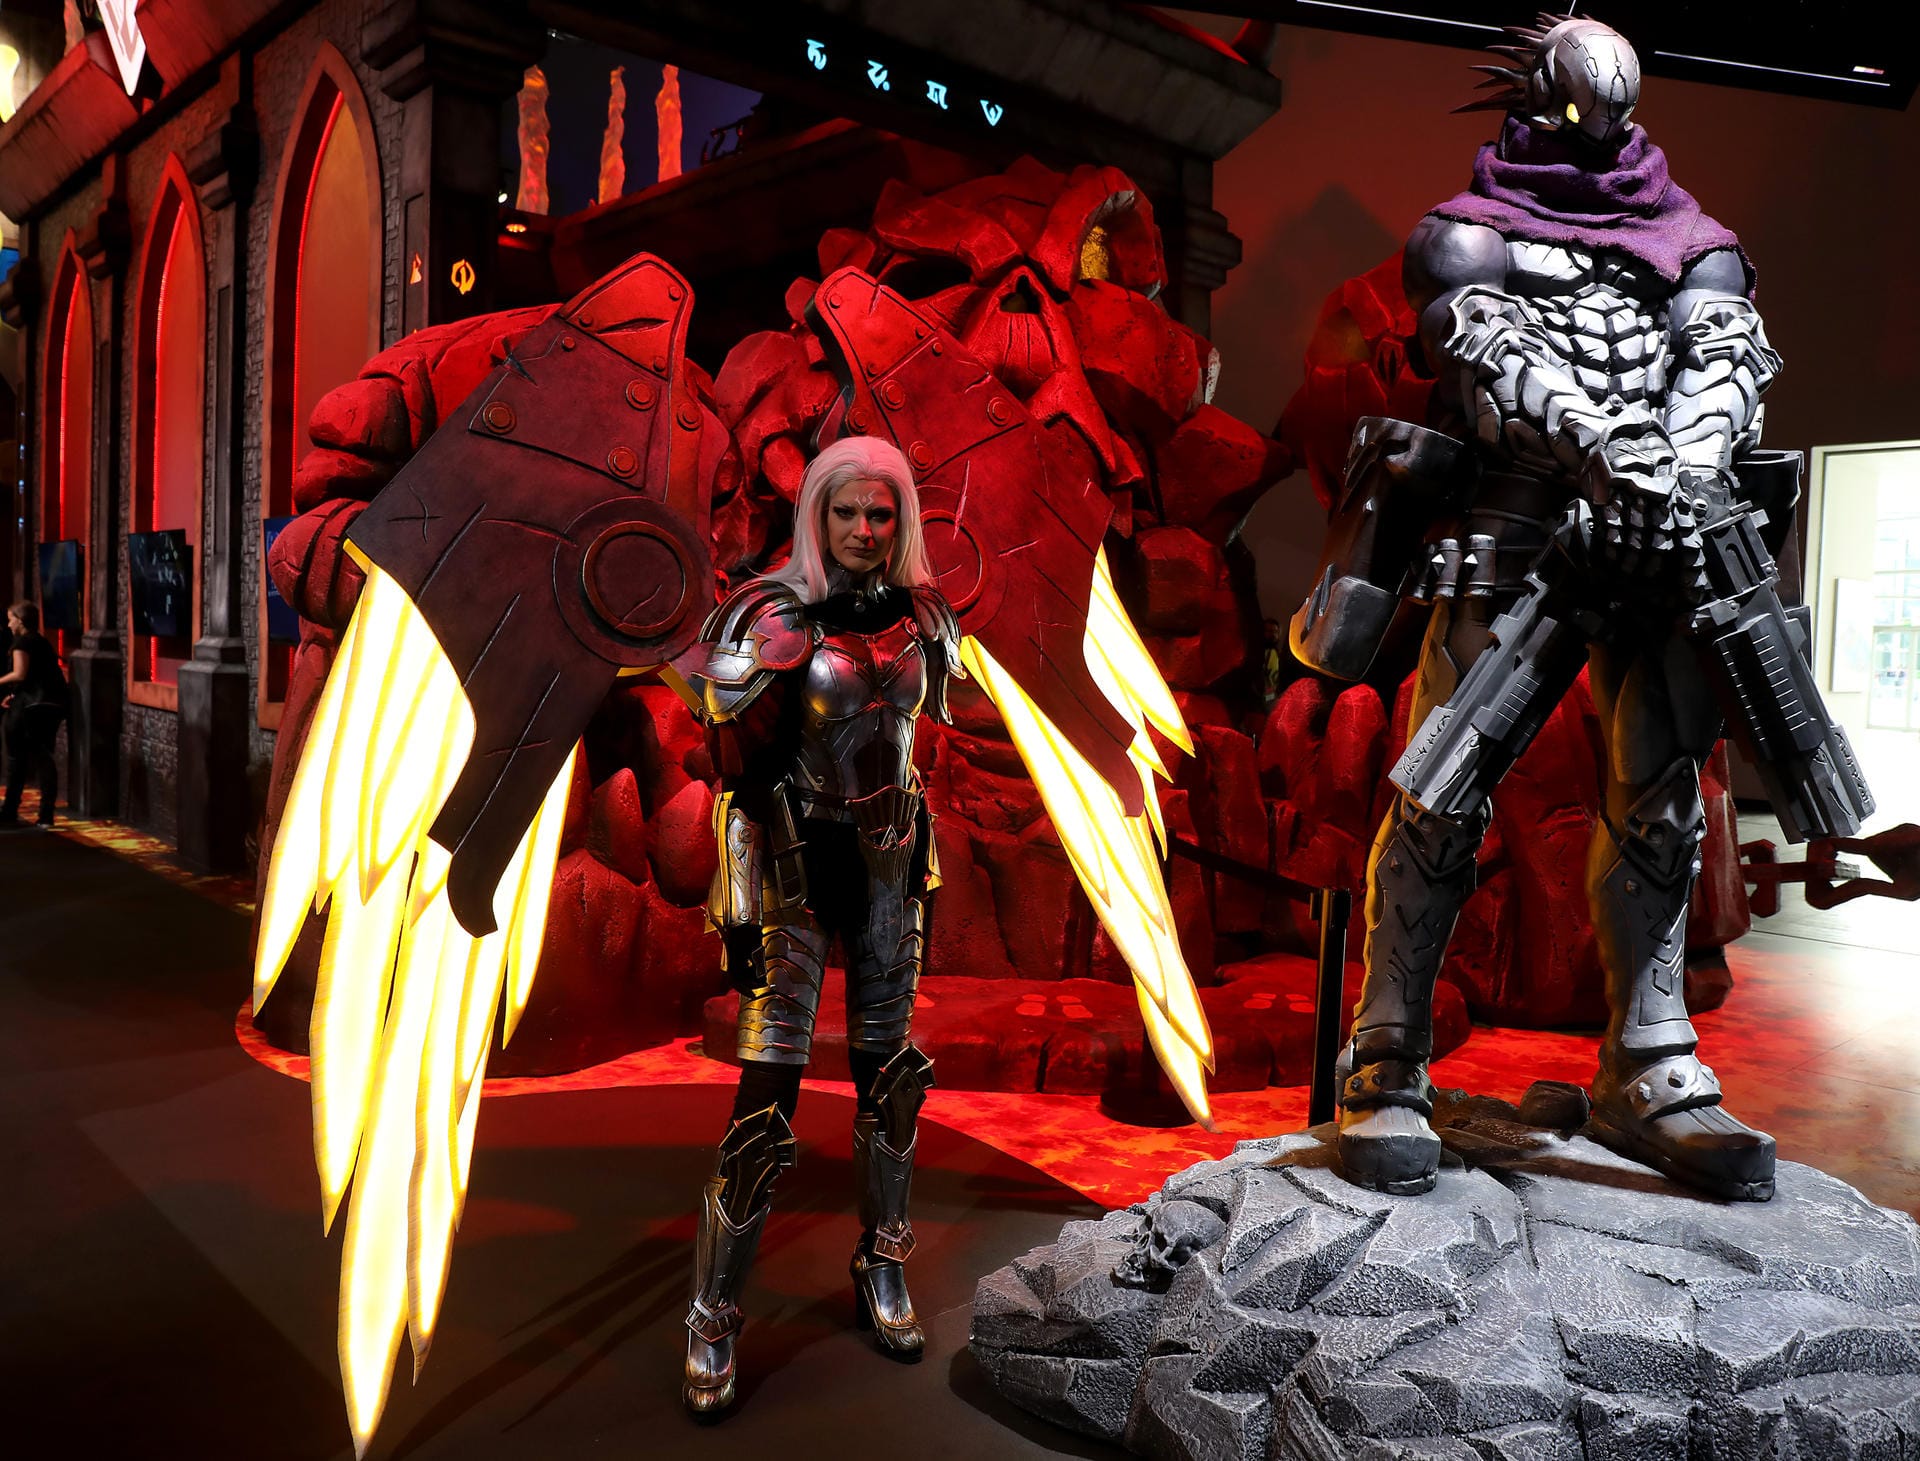 Schräge Kostüme gehören zur Gamescom dazu. Das hier zeigt eine Figur aus dem Spiel "Darksiders Genesis".